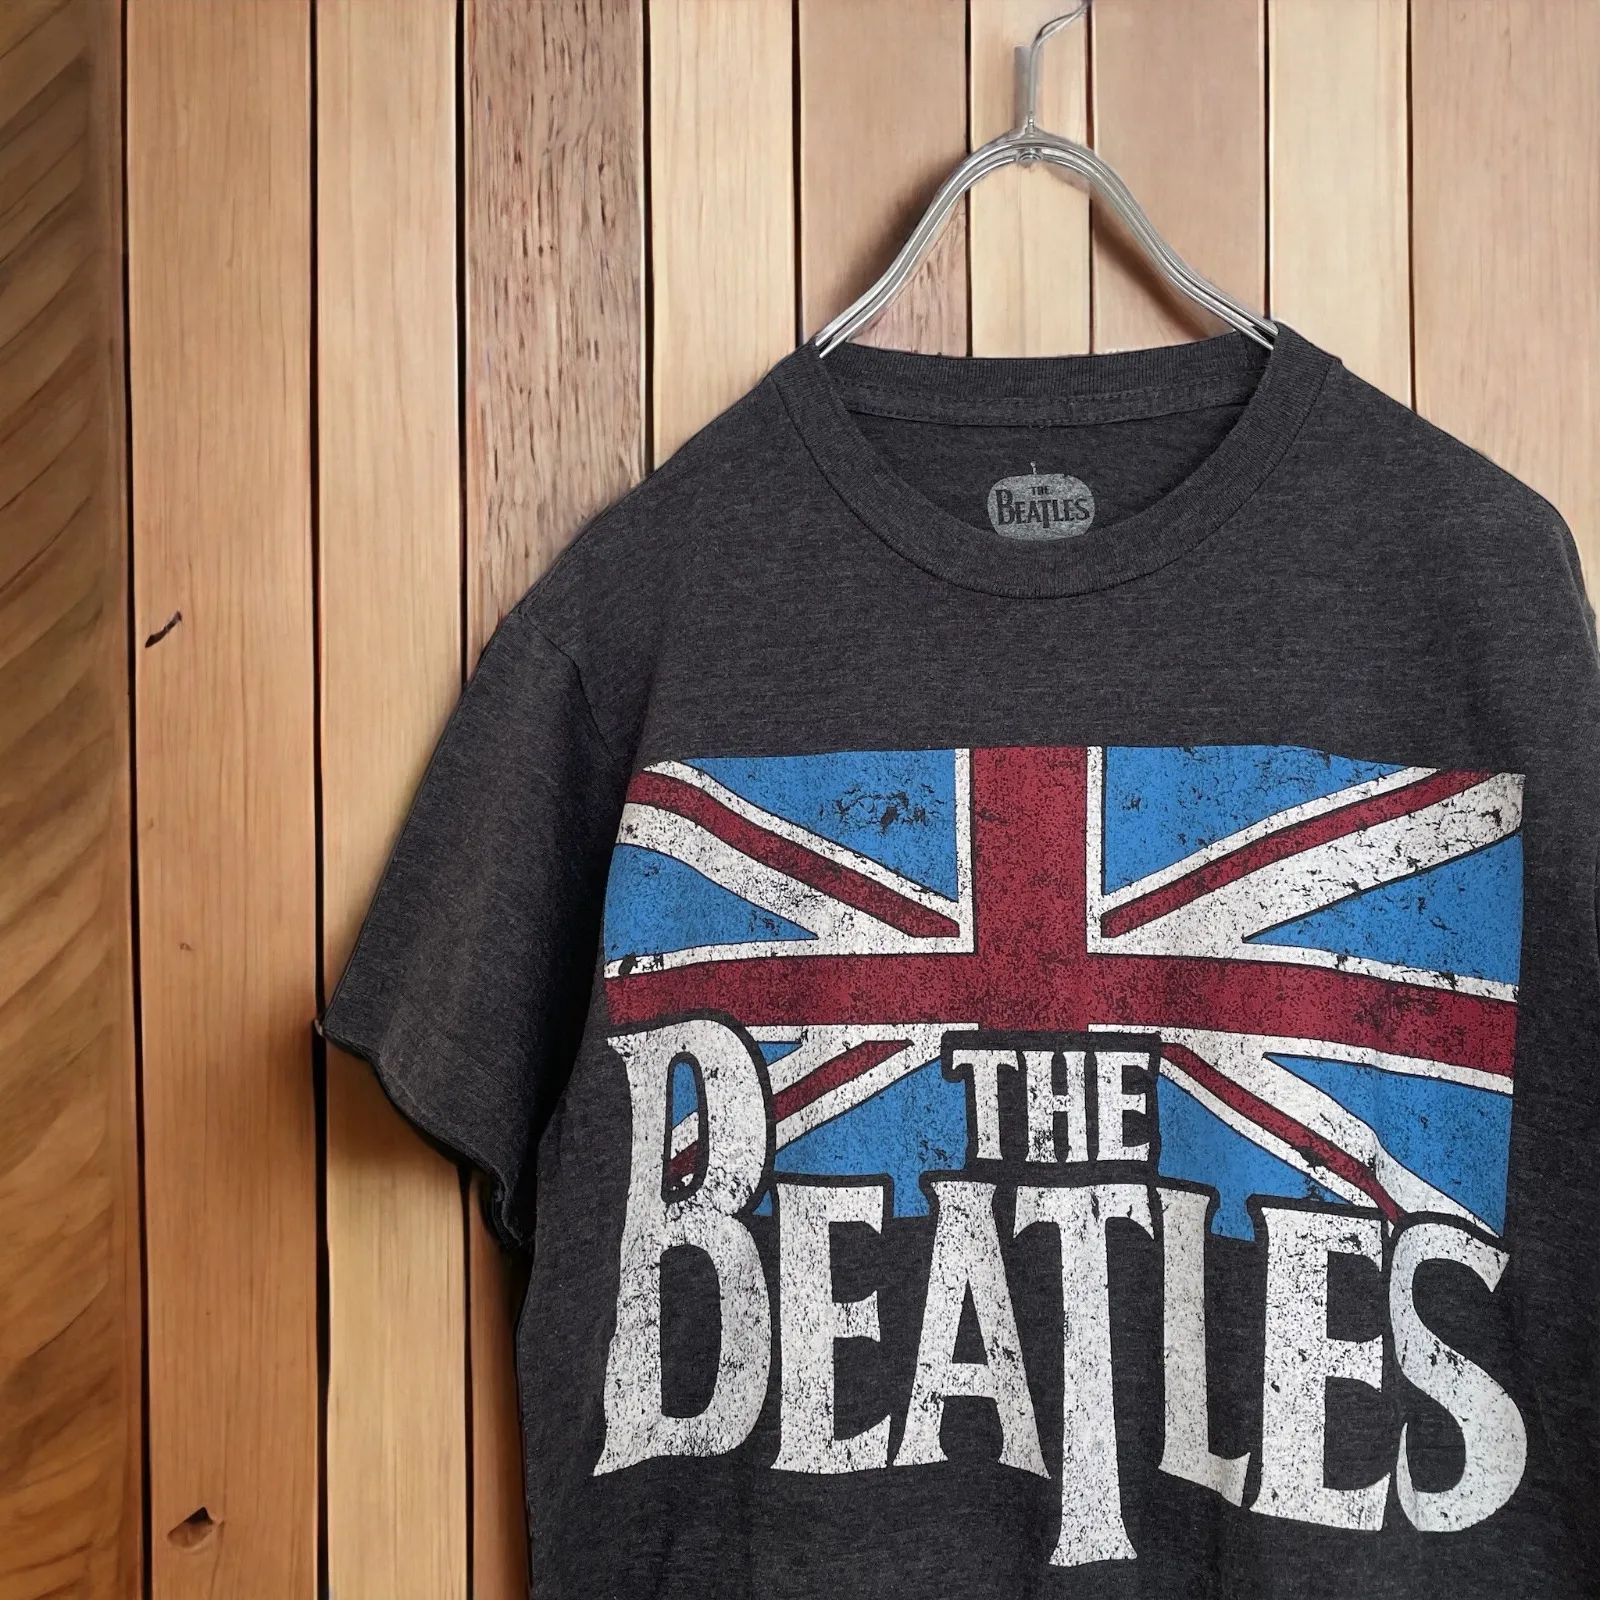 【匿名配送】THE BEATLES ザ・ビートルズ イギリス国旗 バンドTシャツ 半袖 2014 apple corps LTD コピーライト入り  サイズS